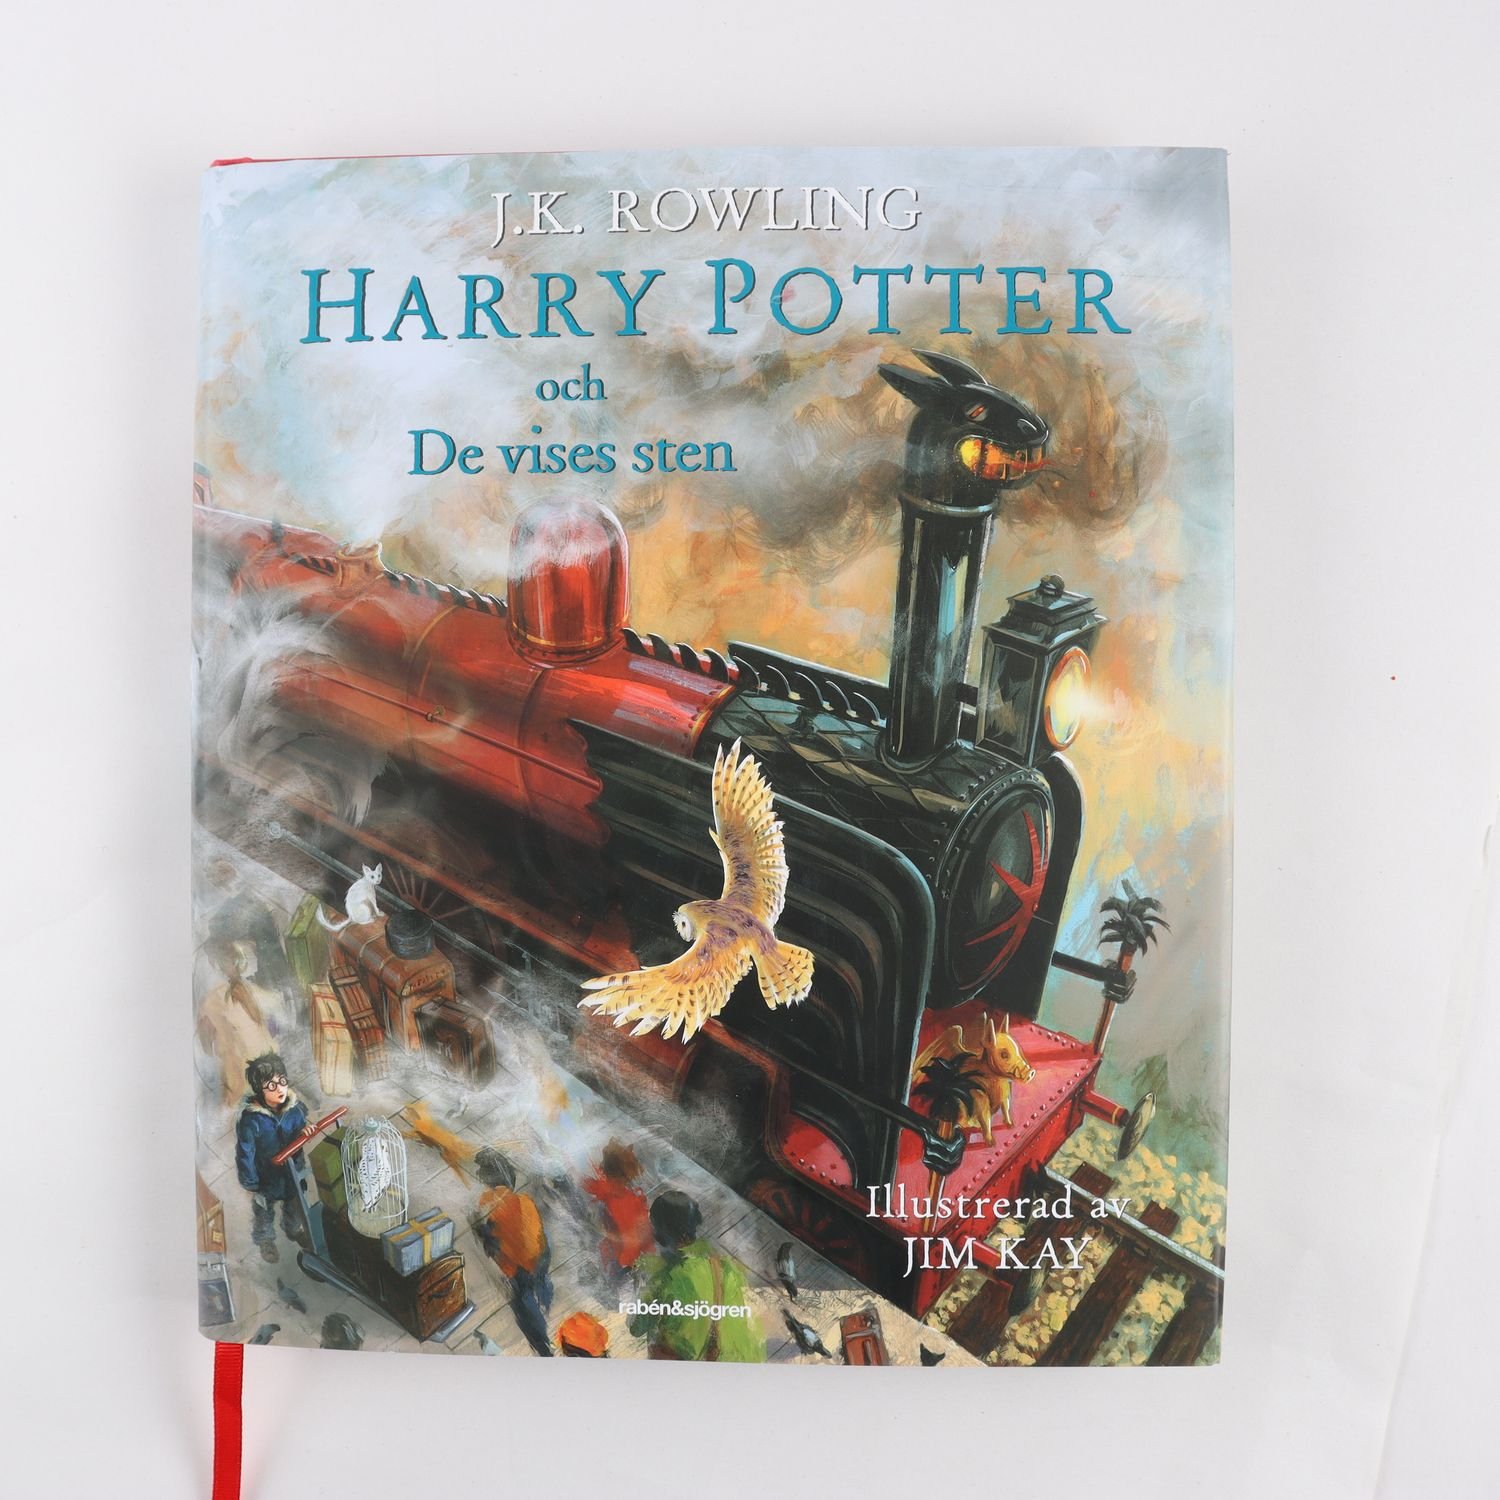 J. K. Rowling, Harry Potter och De vises sten, Illustrerad av Jim Kay